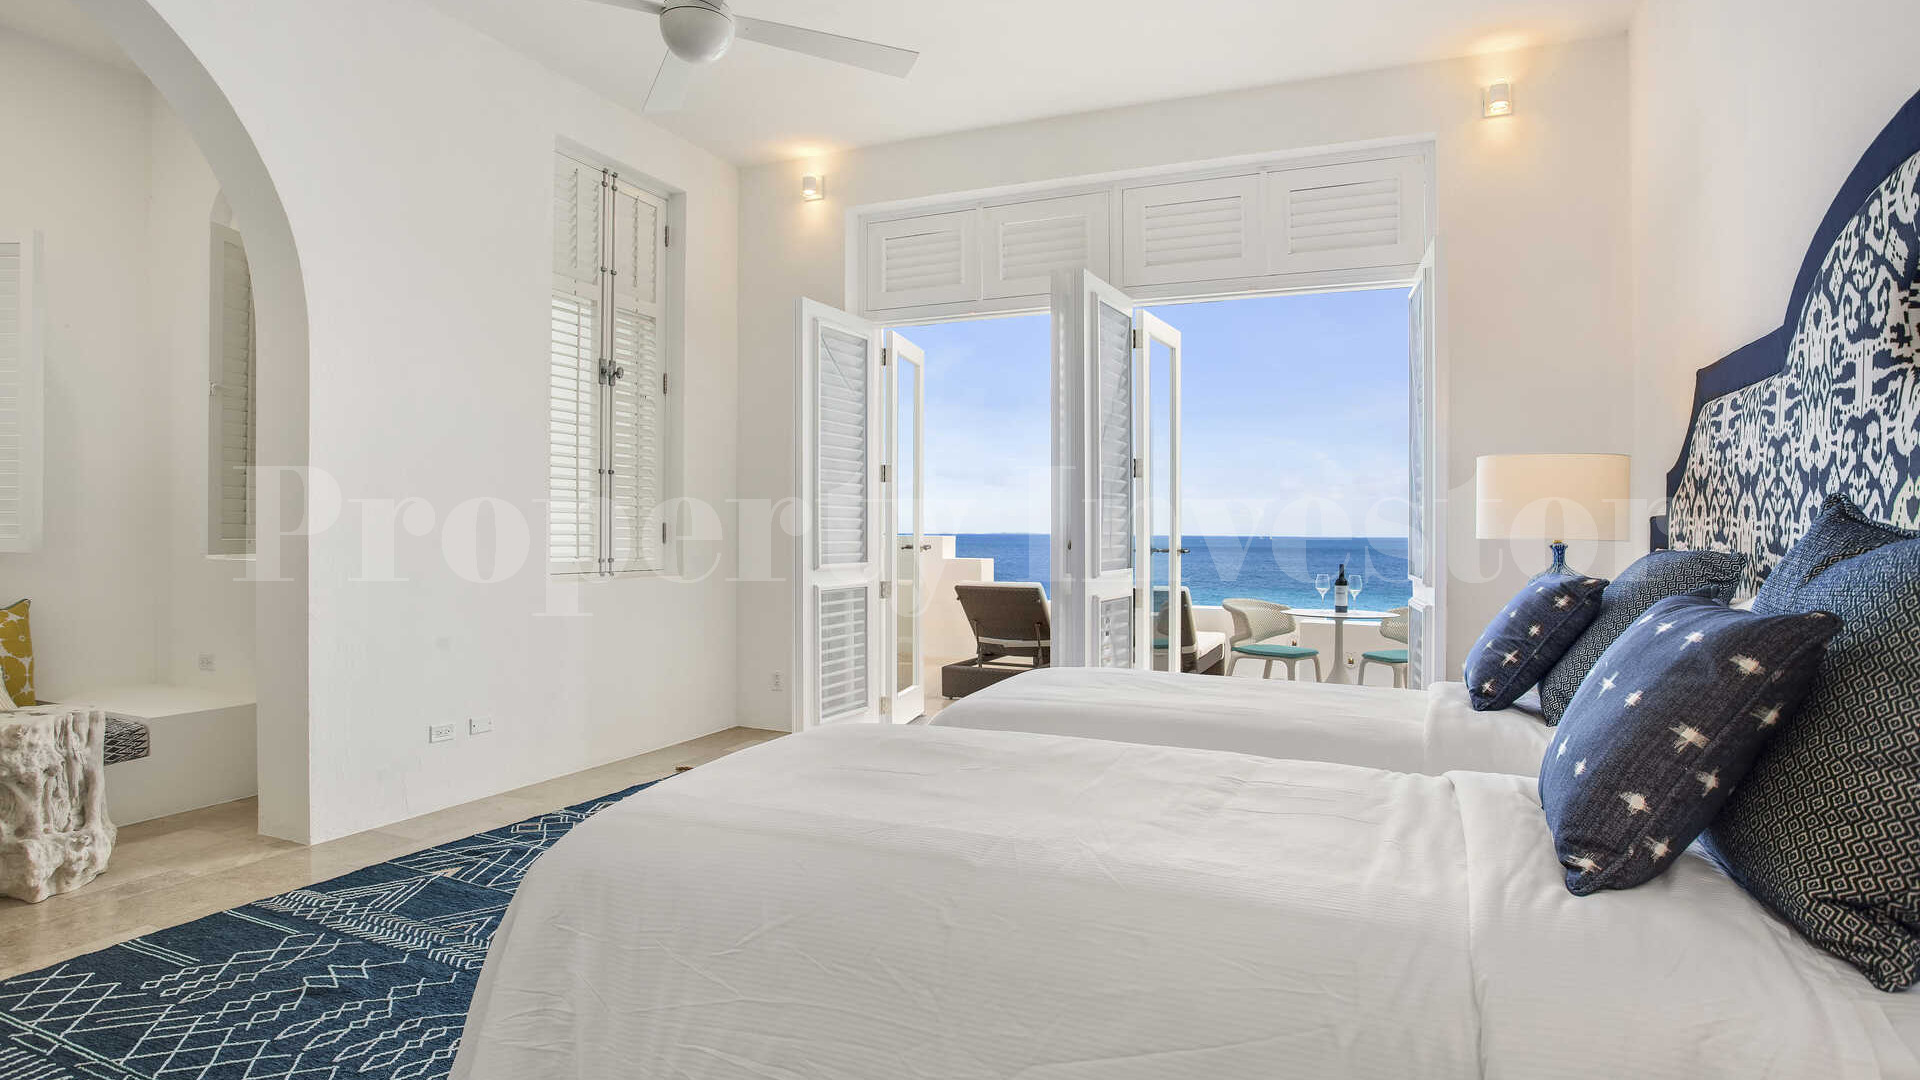 Превосходная вилла с 15 спальнями на пляже Лонг Бэй, Ангилья